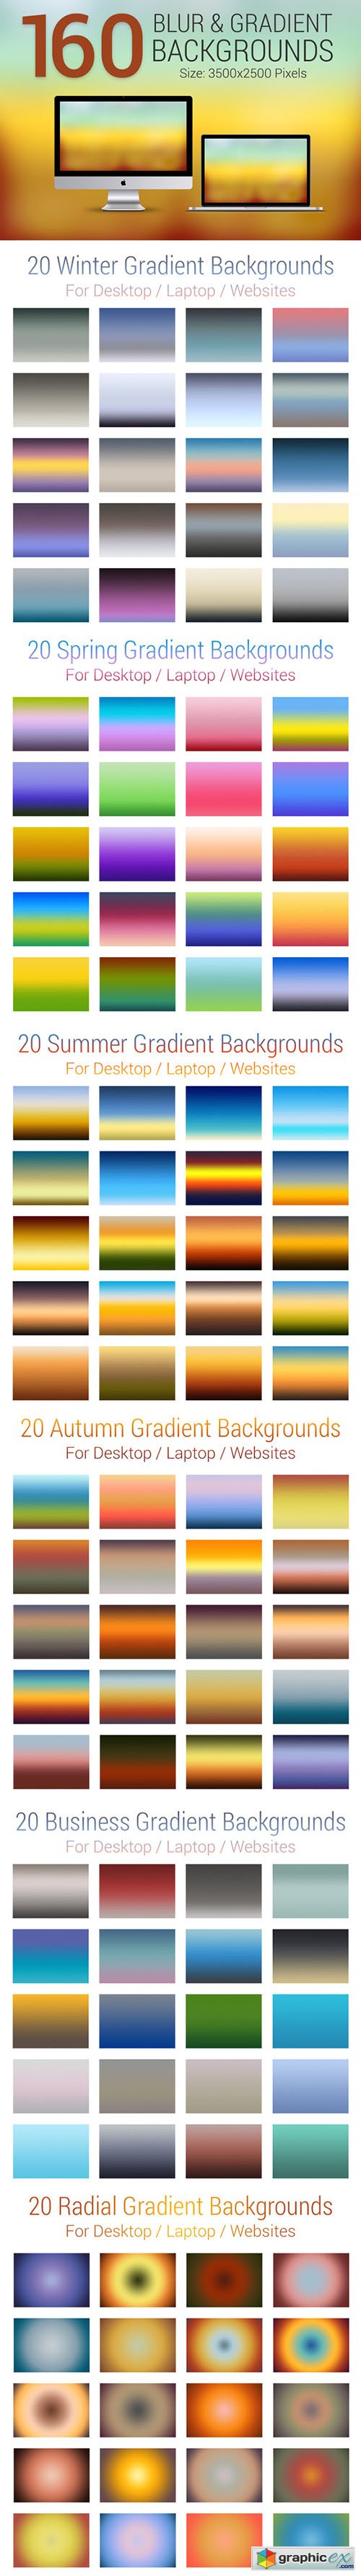 160 Blur & Gradient Backgrounds